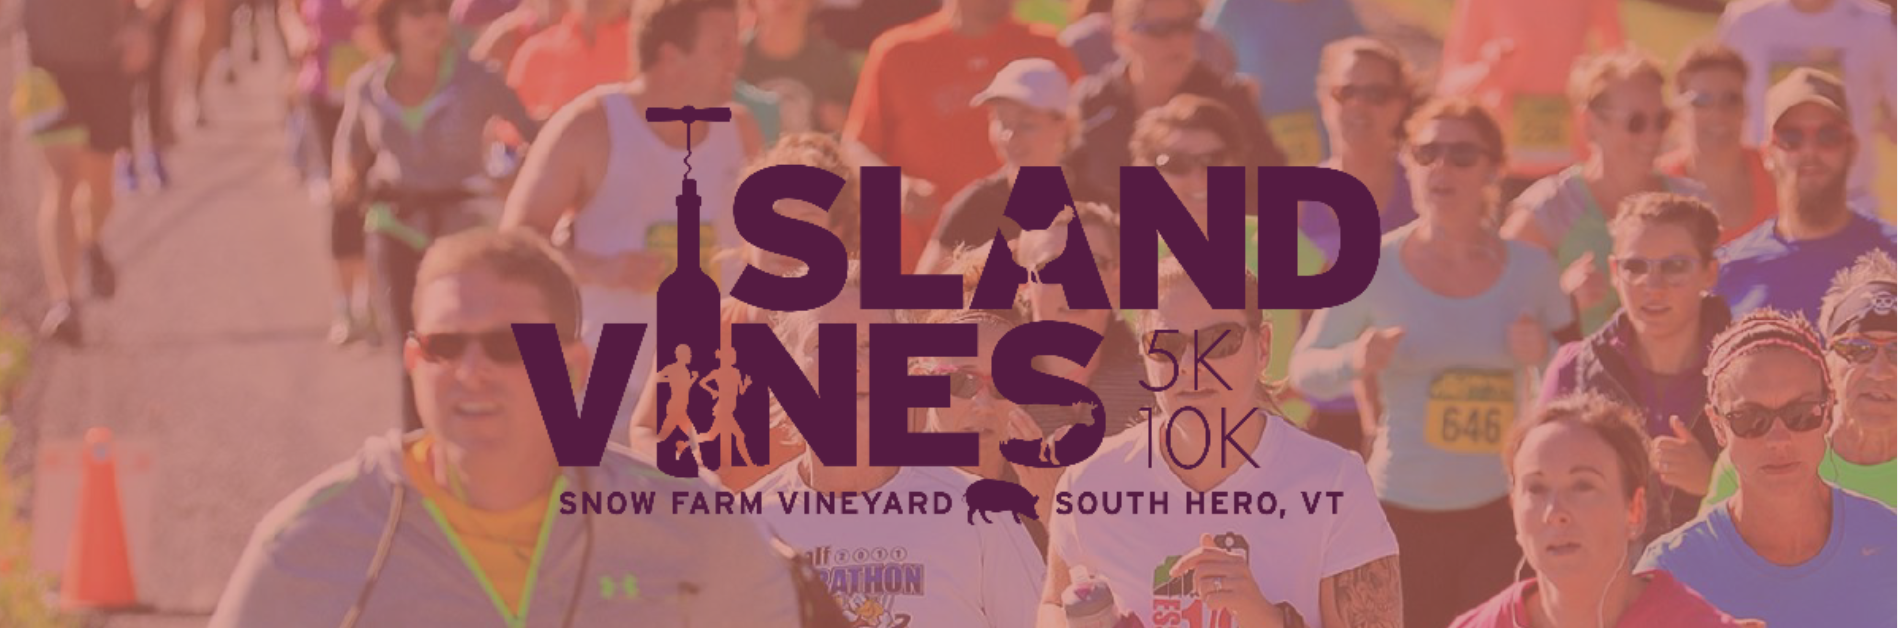 Register for Island Vines 5K/10K